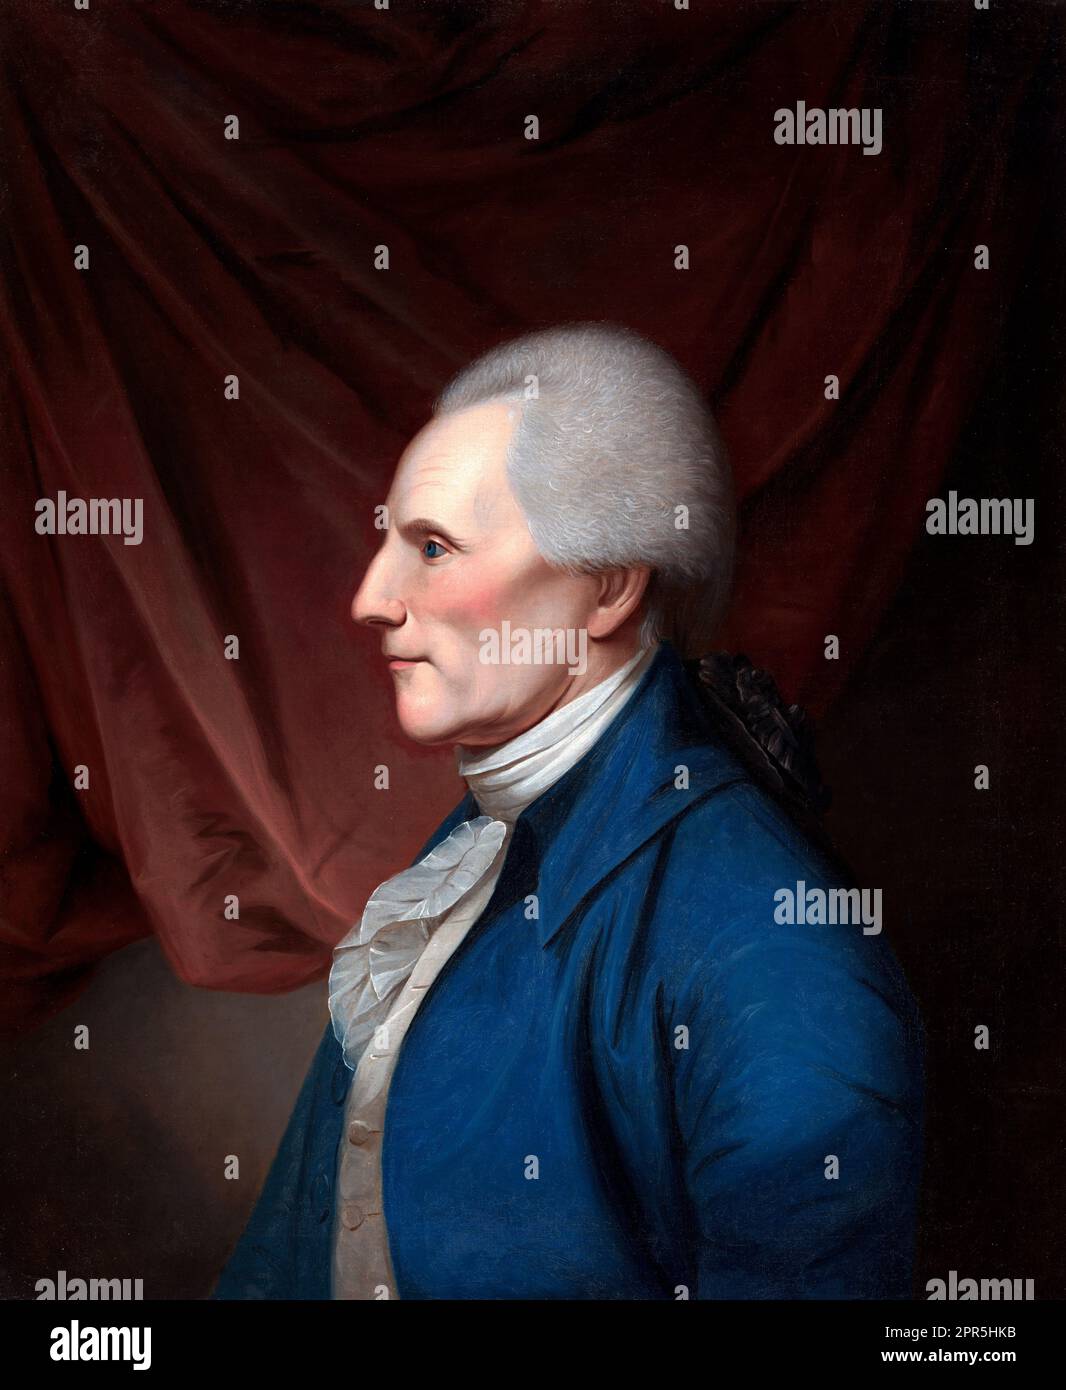 Richard Henry Lee. Portrait du Père fondateur et homme d'État de Virginie, Richard Henry Lee (1732-1794) par Charles Willson Peale, huile sur toile, 1805 Banque D'Images